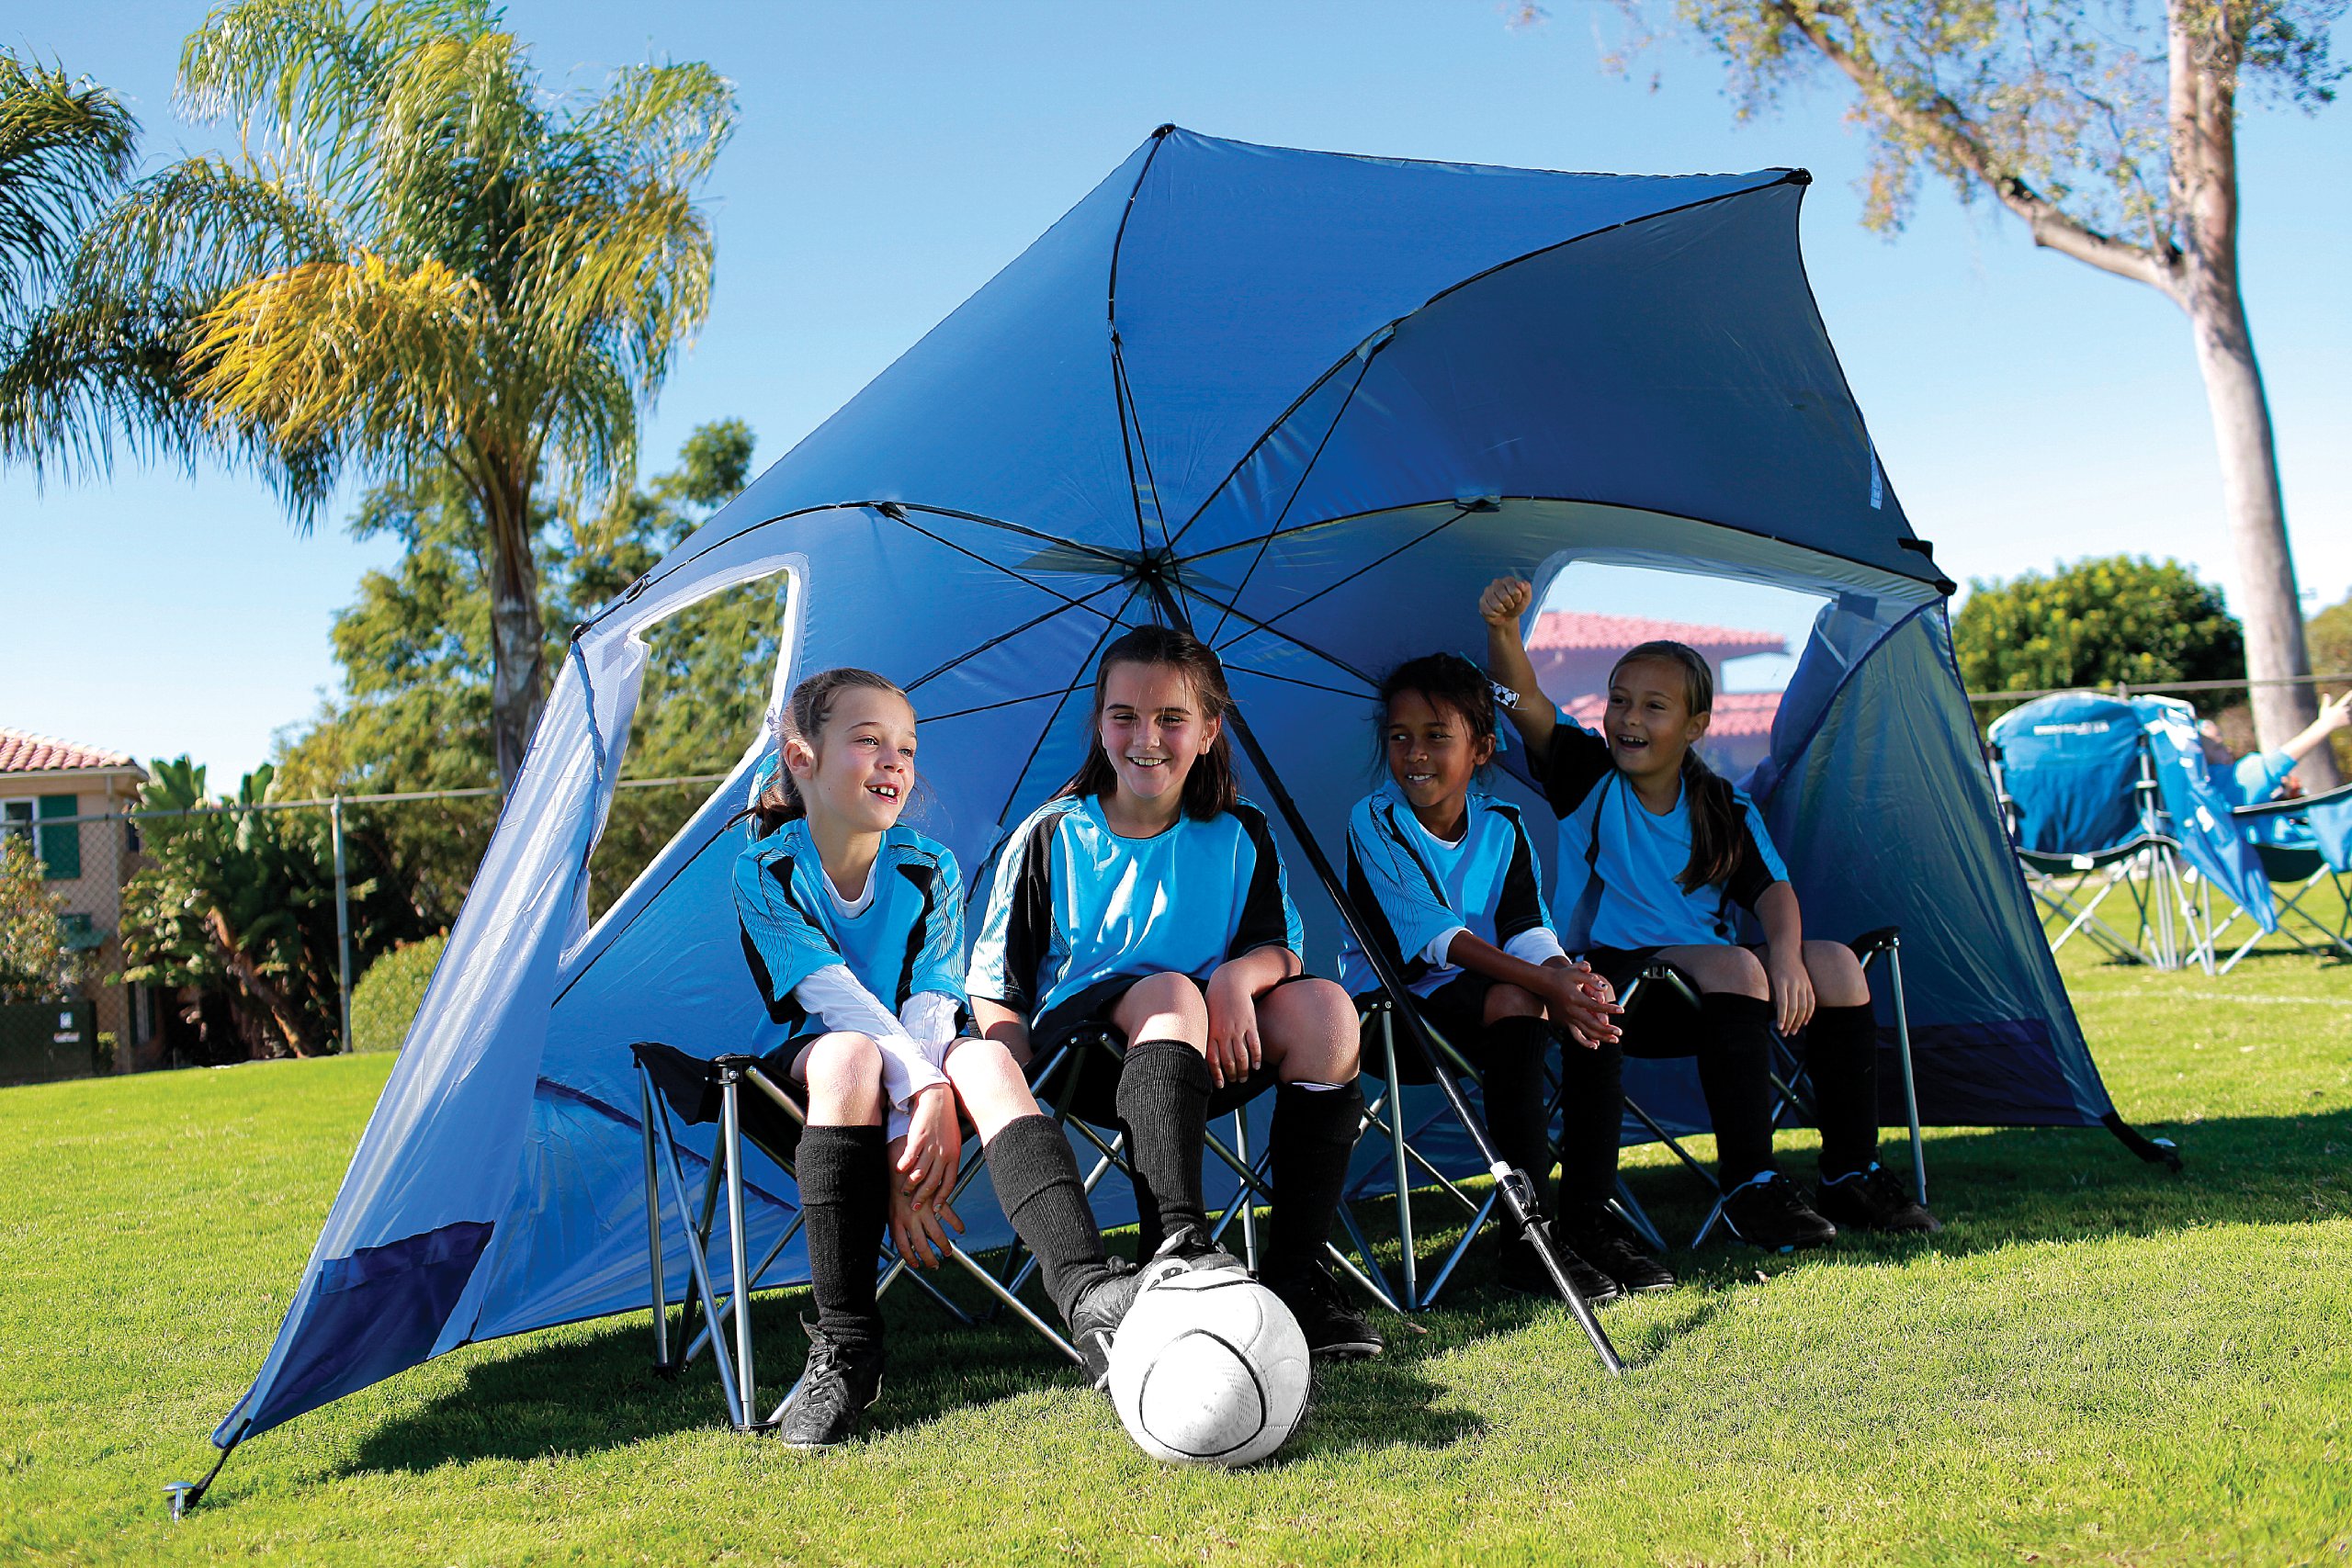 Sport-Brella Super-Brella SPF 50+ Sun and Rain Canopy Umbrella for Camping, Beach and Sports Events (8-Foot, Blue)